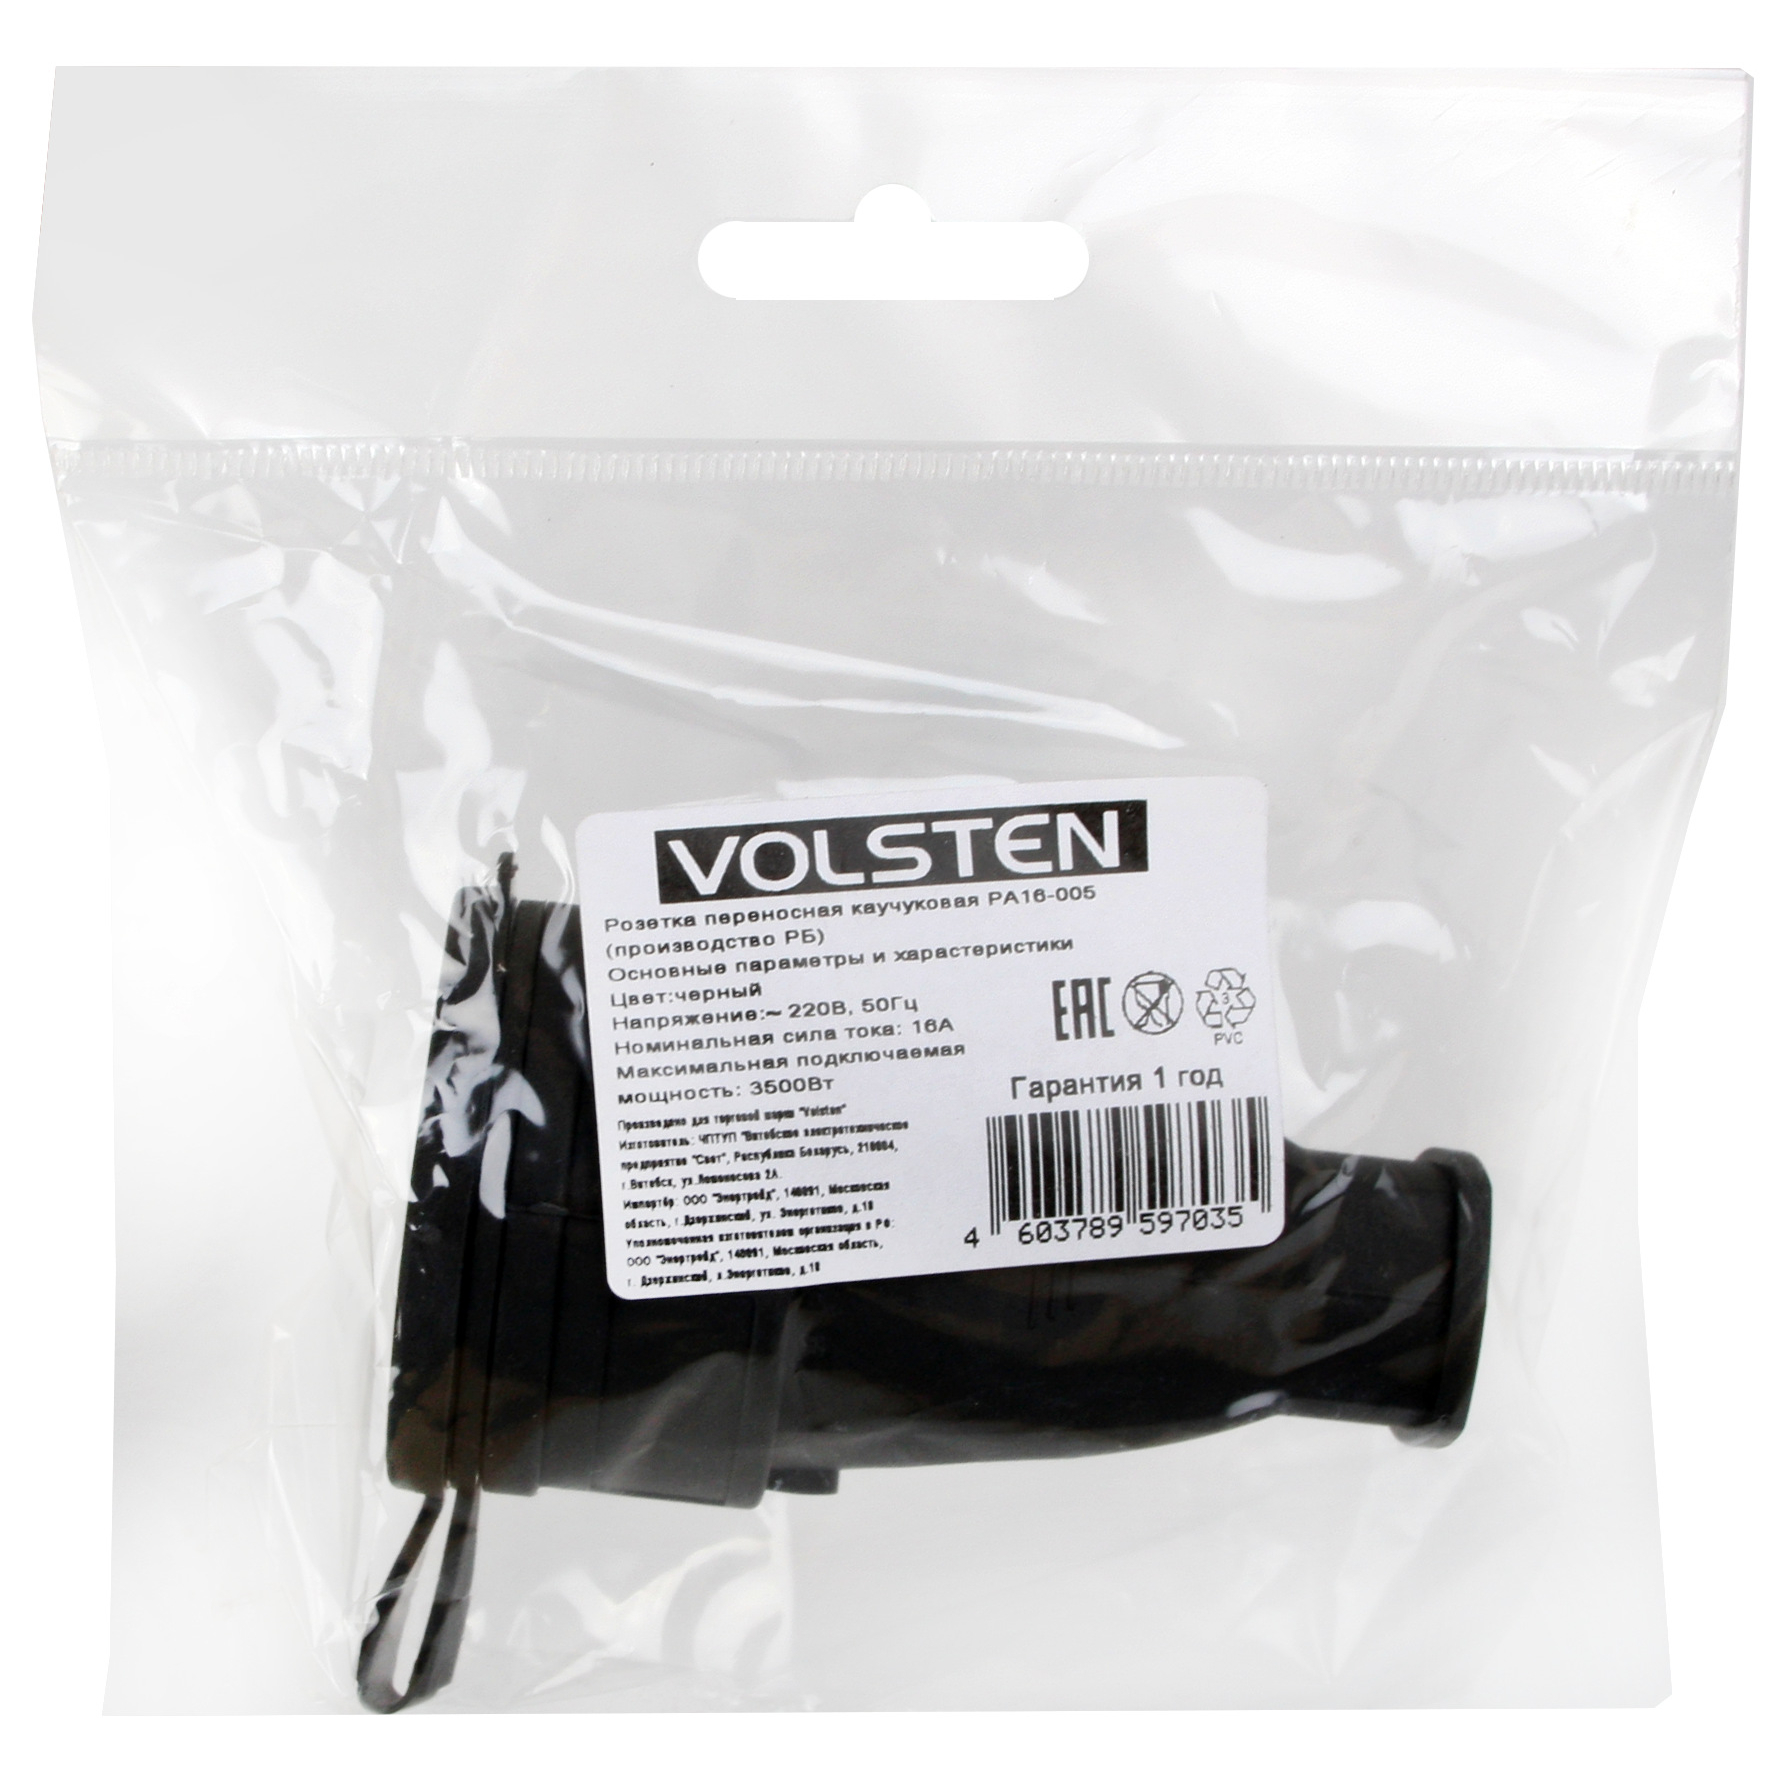 Volsten Sb1-MZ Black, Каучуковая розетка IP54 Черная (1 гнездо,разборная,земля, Модель РА16-005)